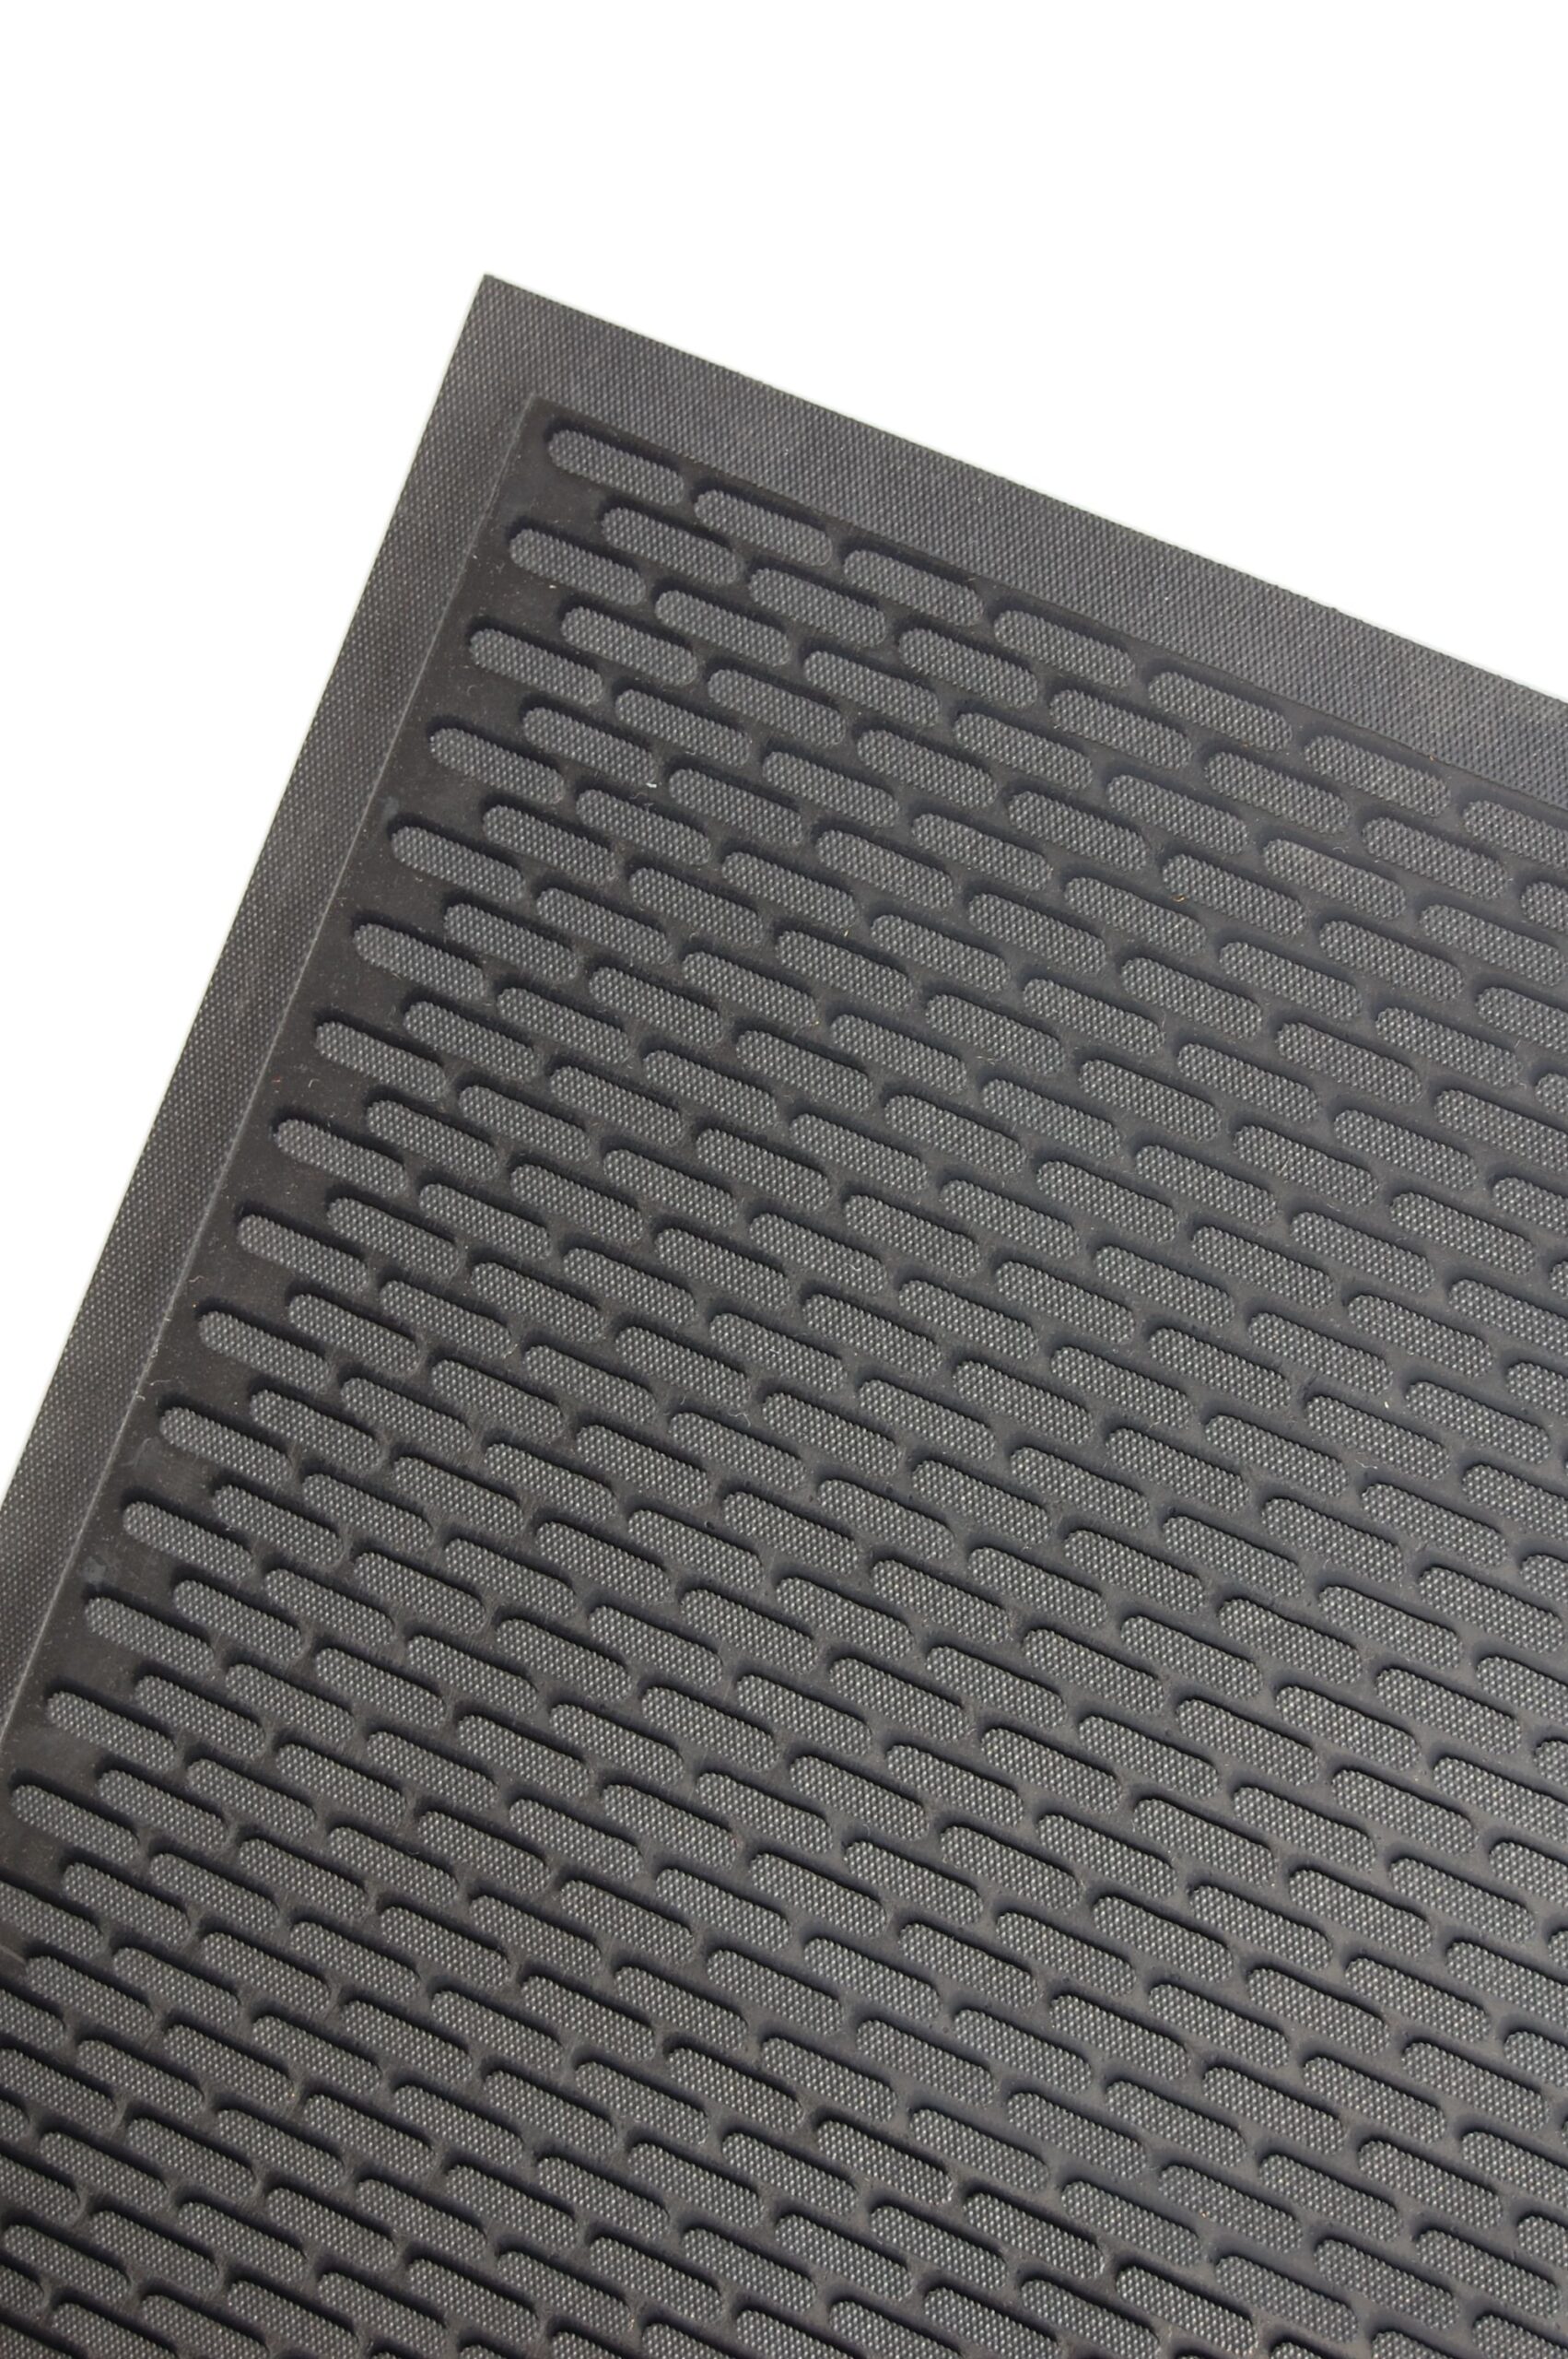 Rubber/Nylon Charcoal Guardian WaterGuard Indoor/Outdoor Wiper Scraper Floor Mat 3x14 